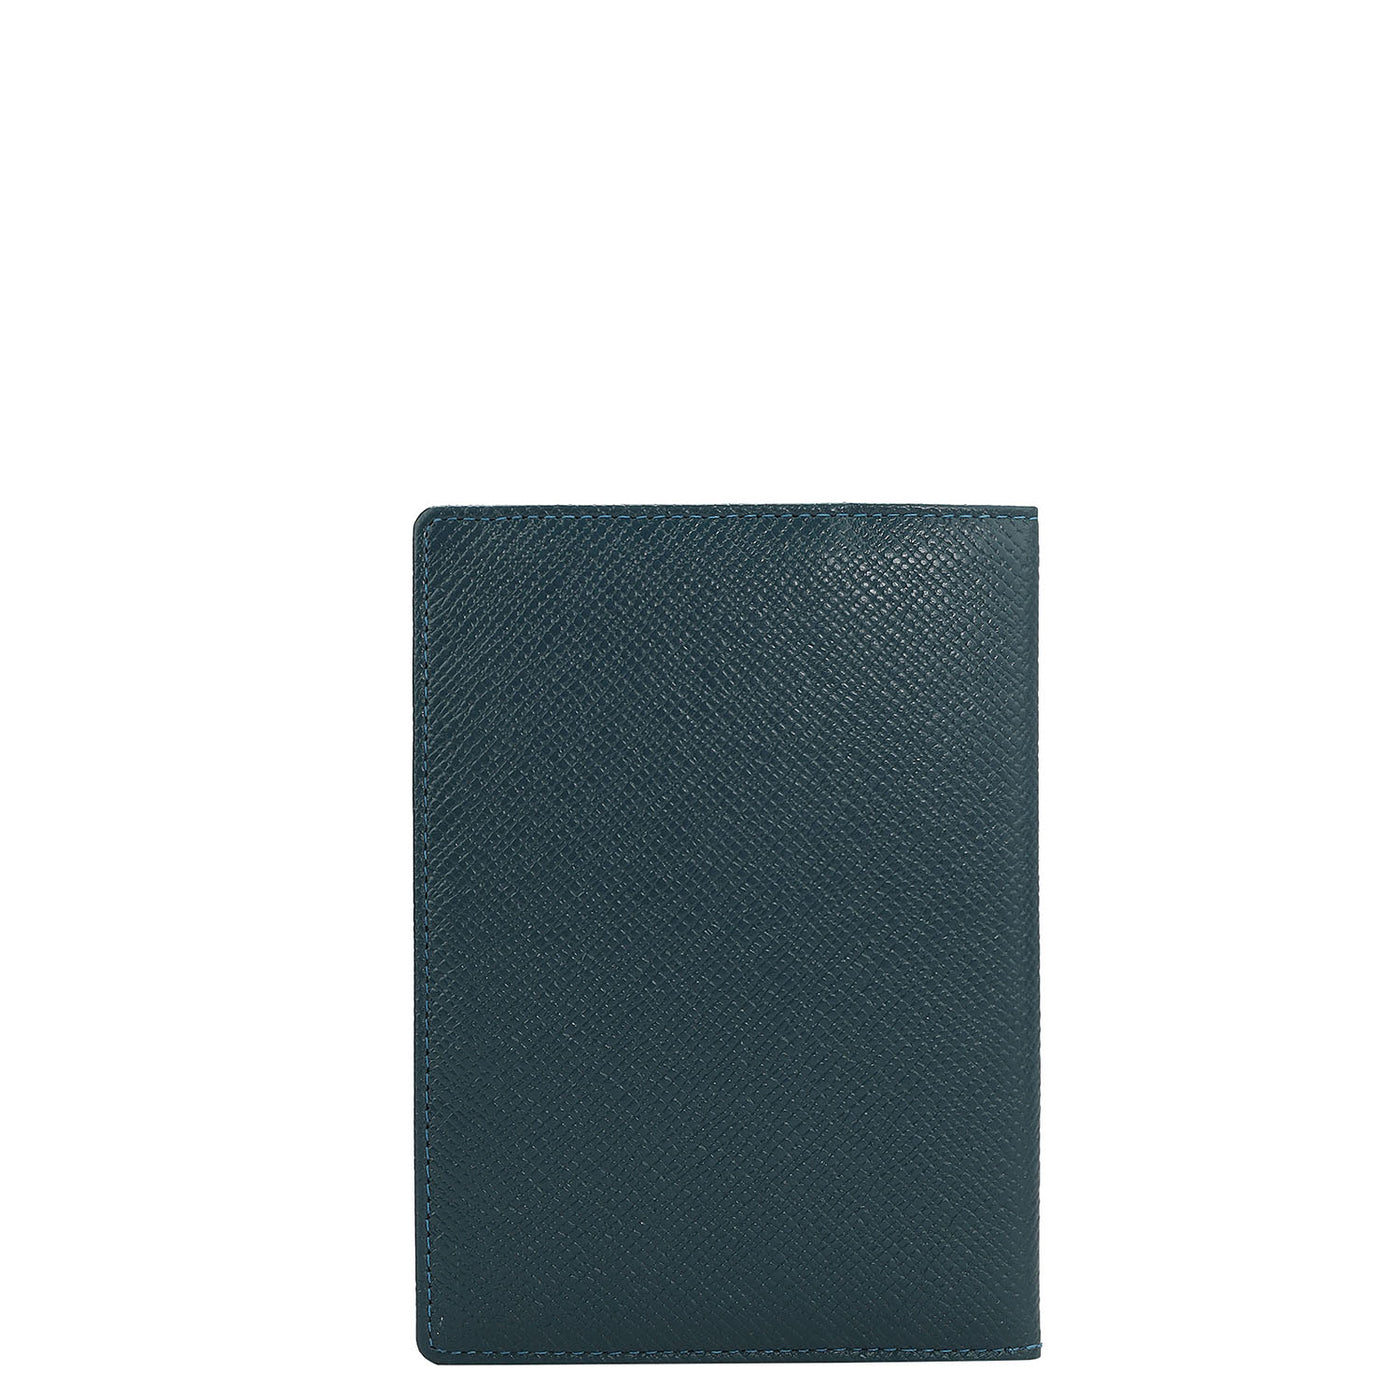 Franzy Leather Passport Case - Octane